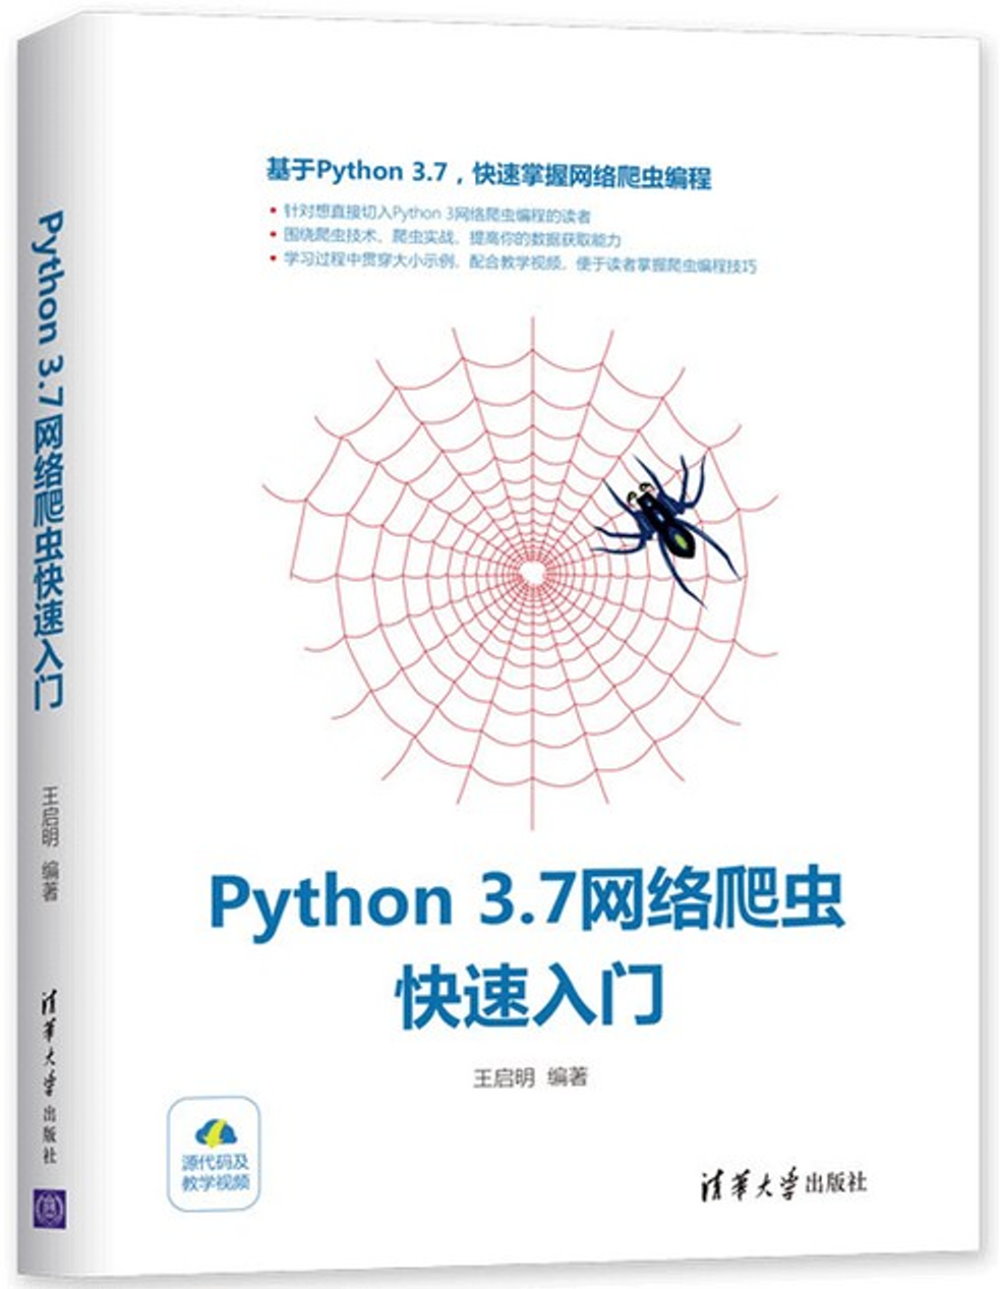 Python 3.7網路爬蟲快速入門